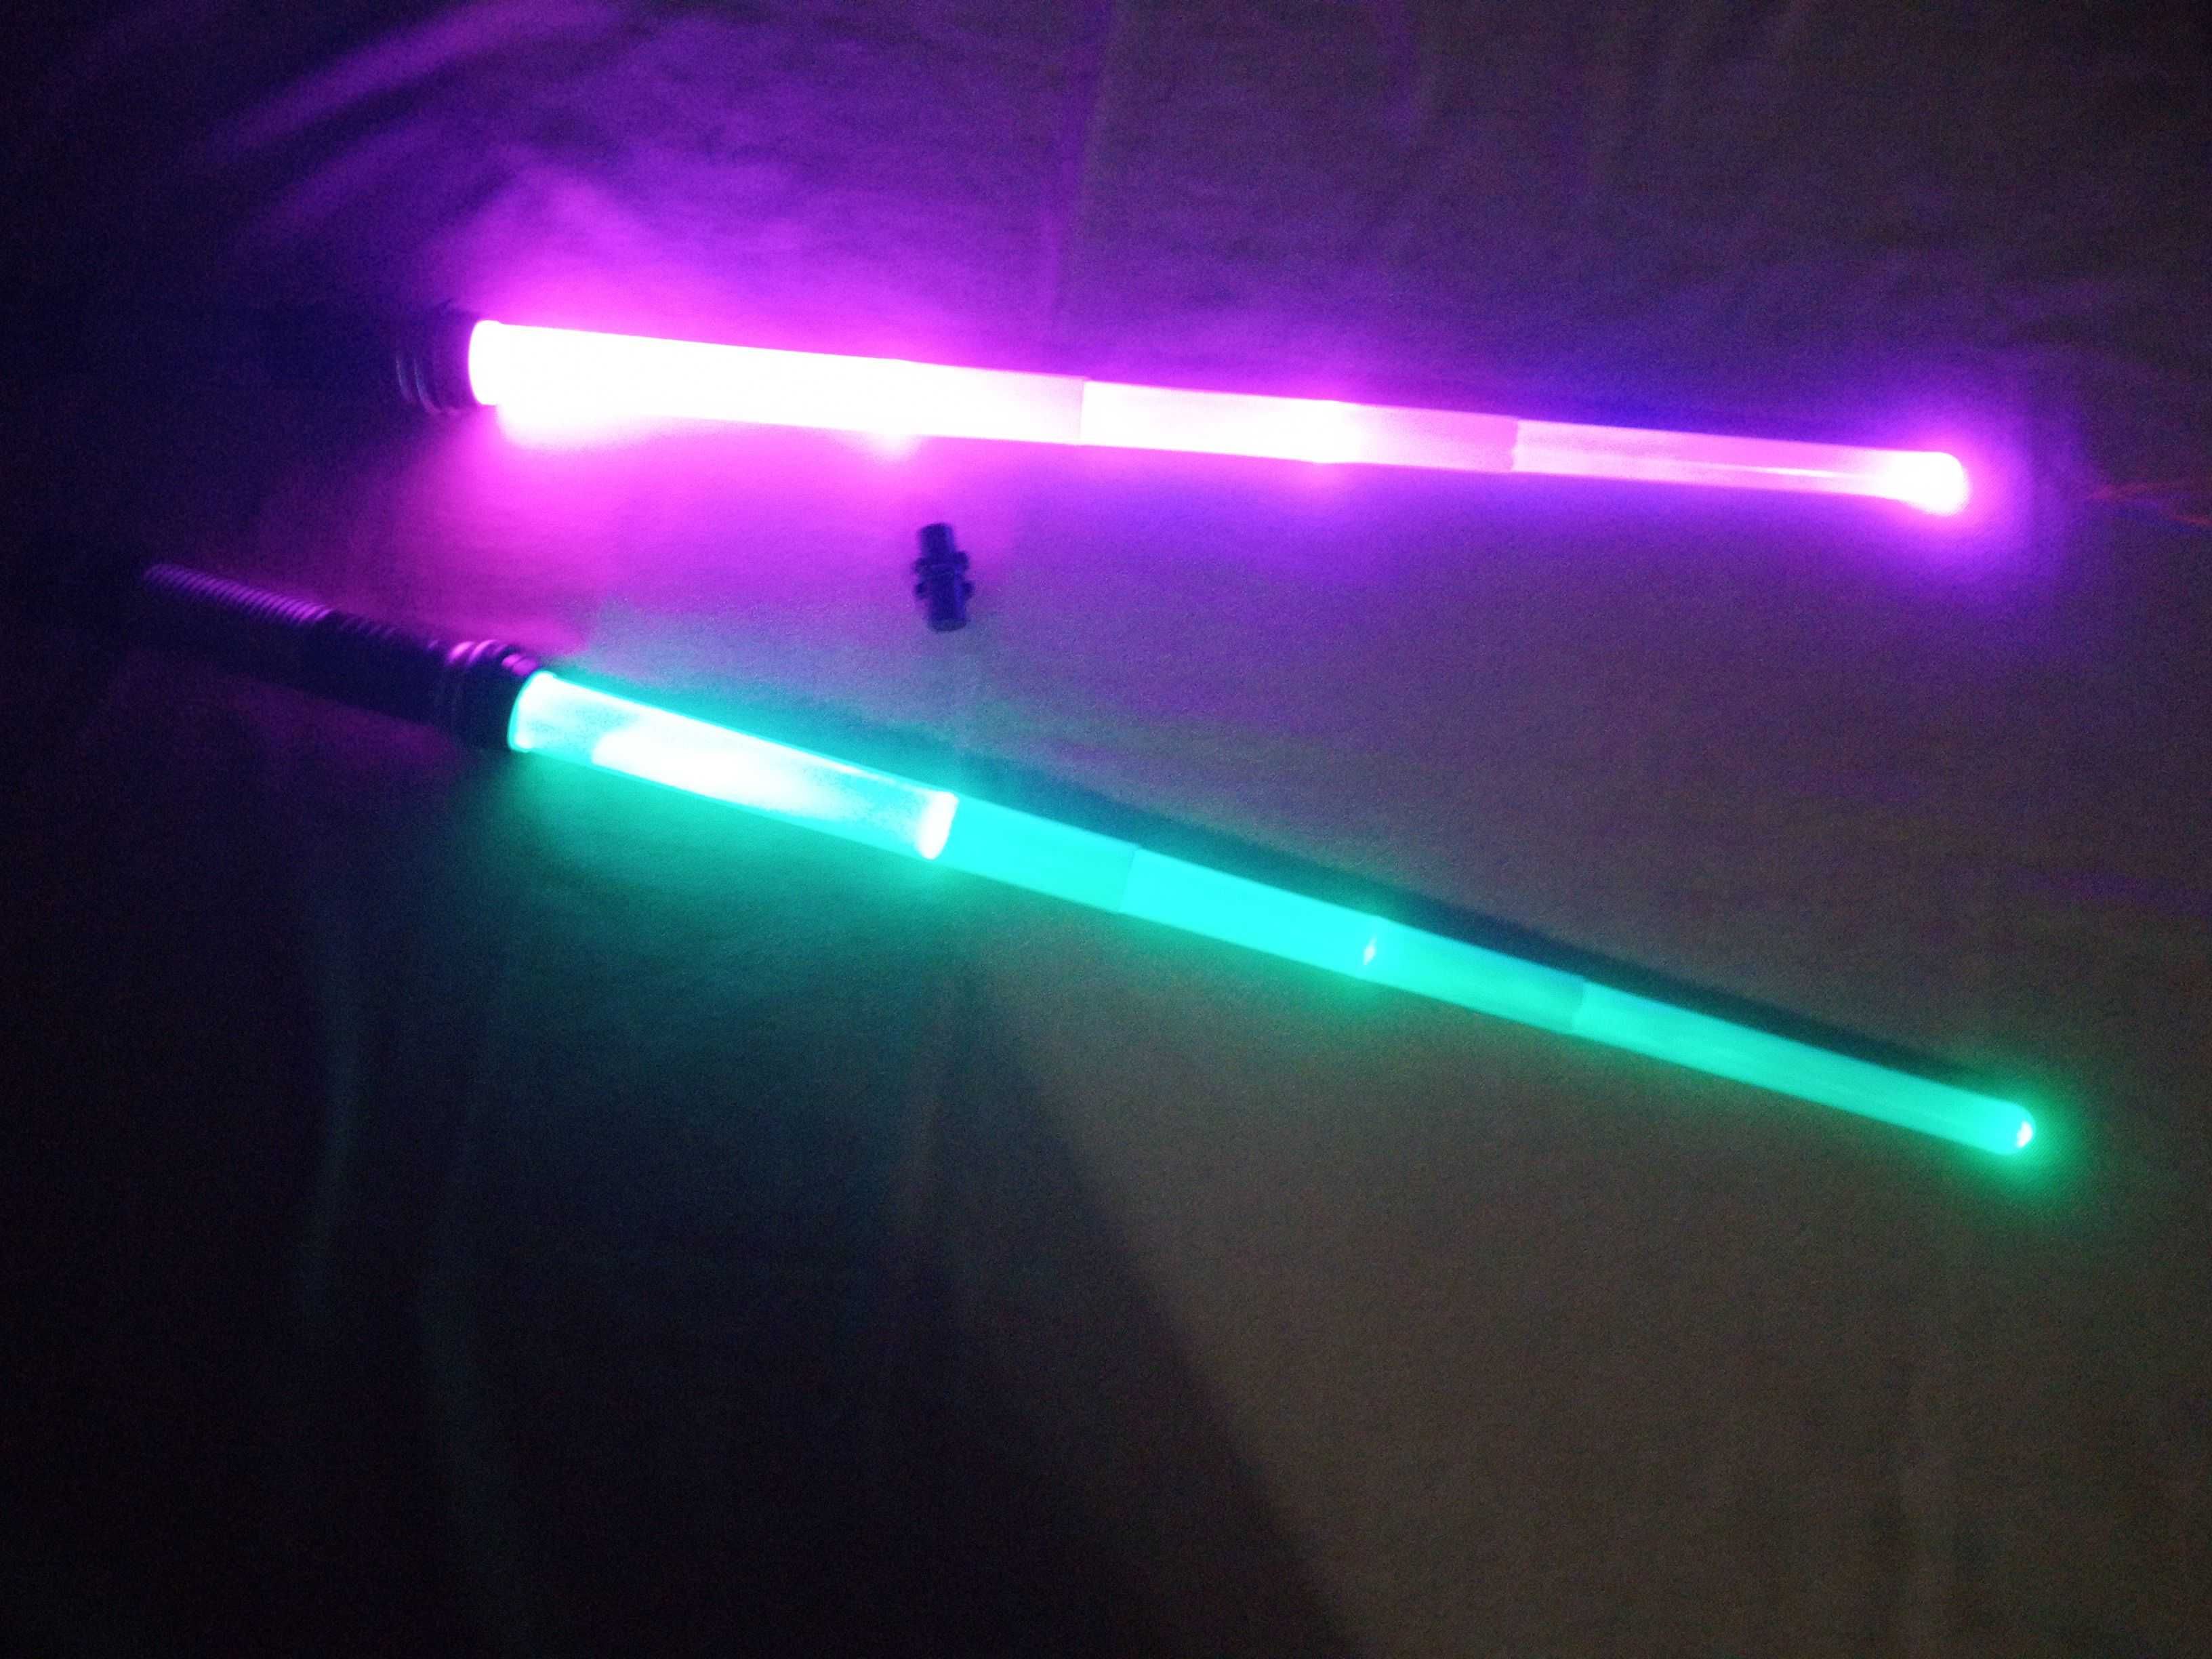 Лазерные мечи по мотивам космической саги "Звездные войны"